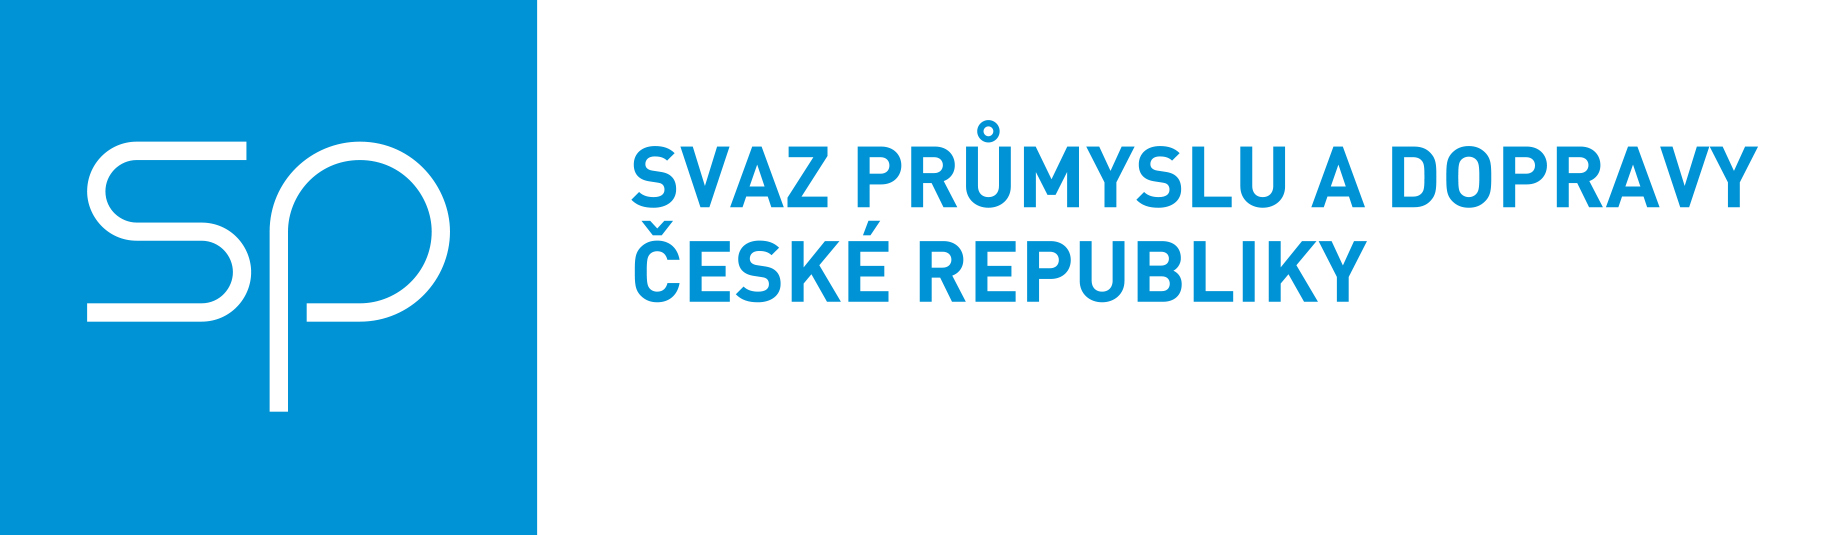 Svaz průmyslu a dopravy České republiky